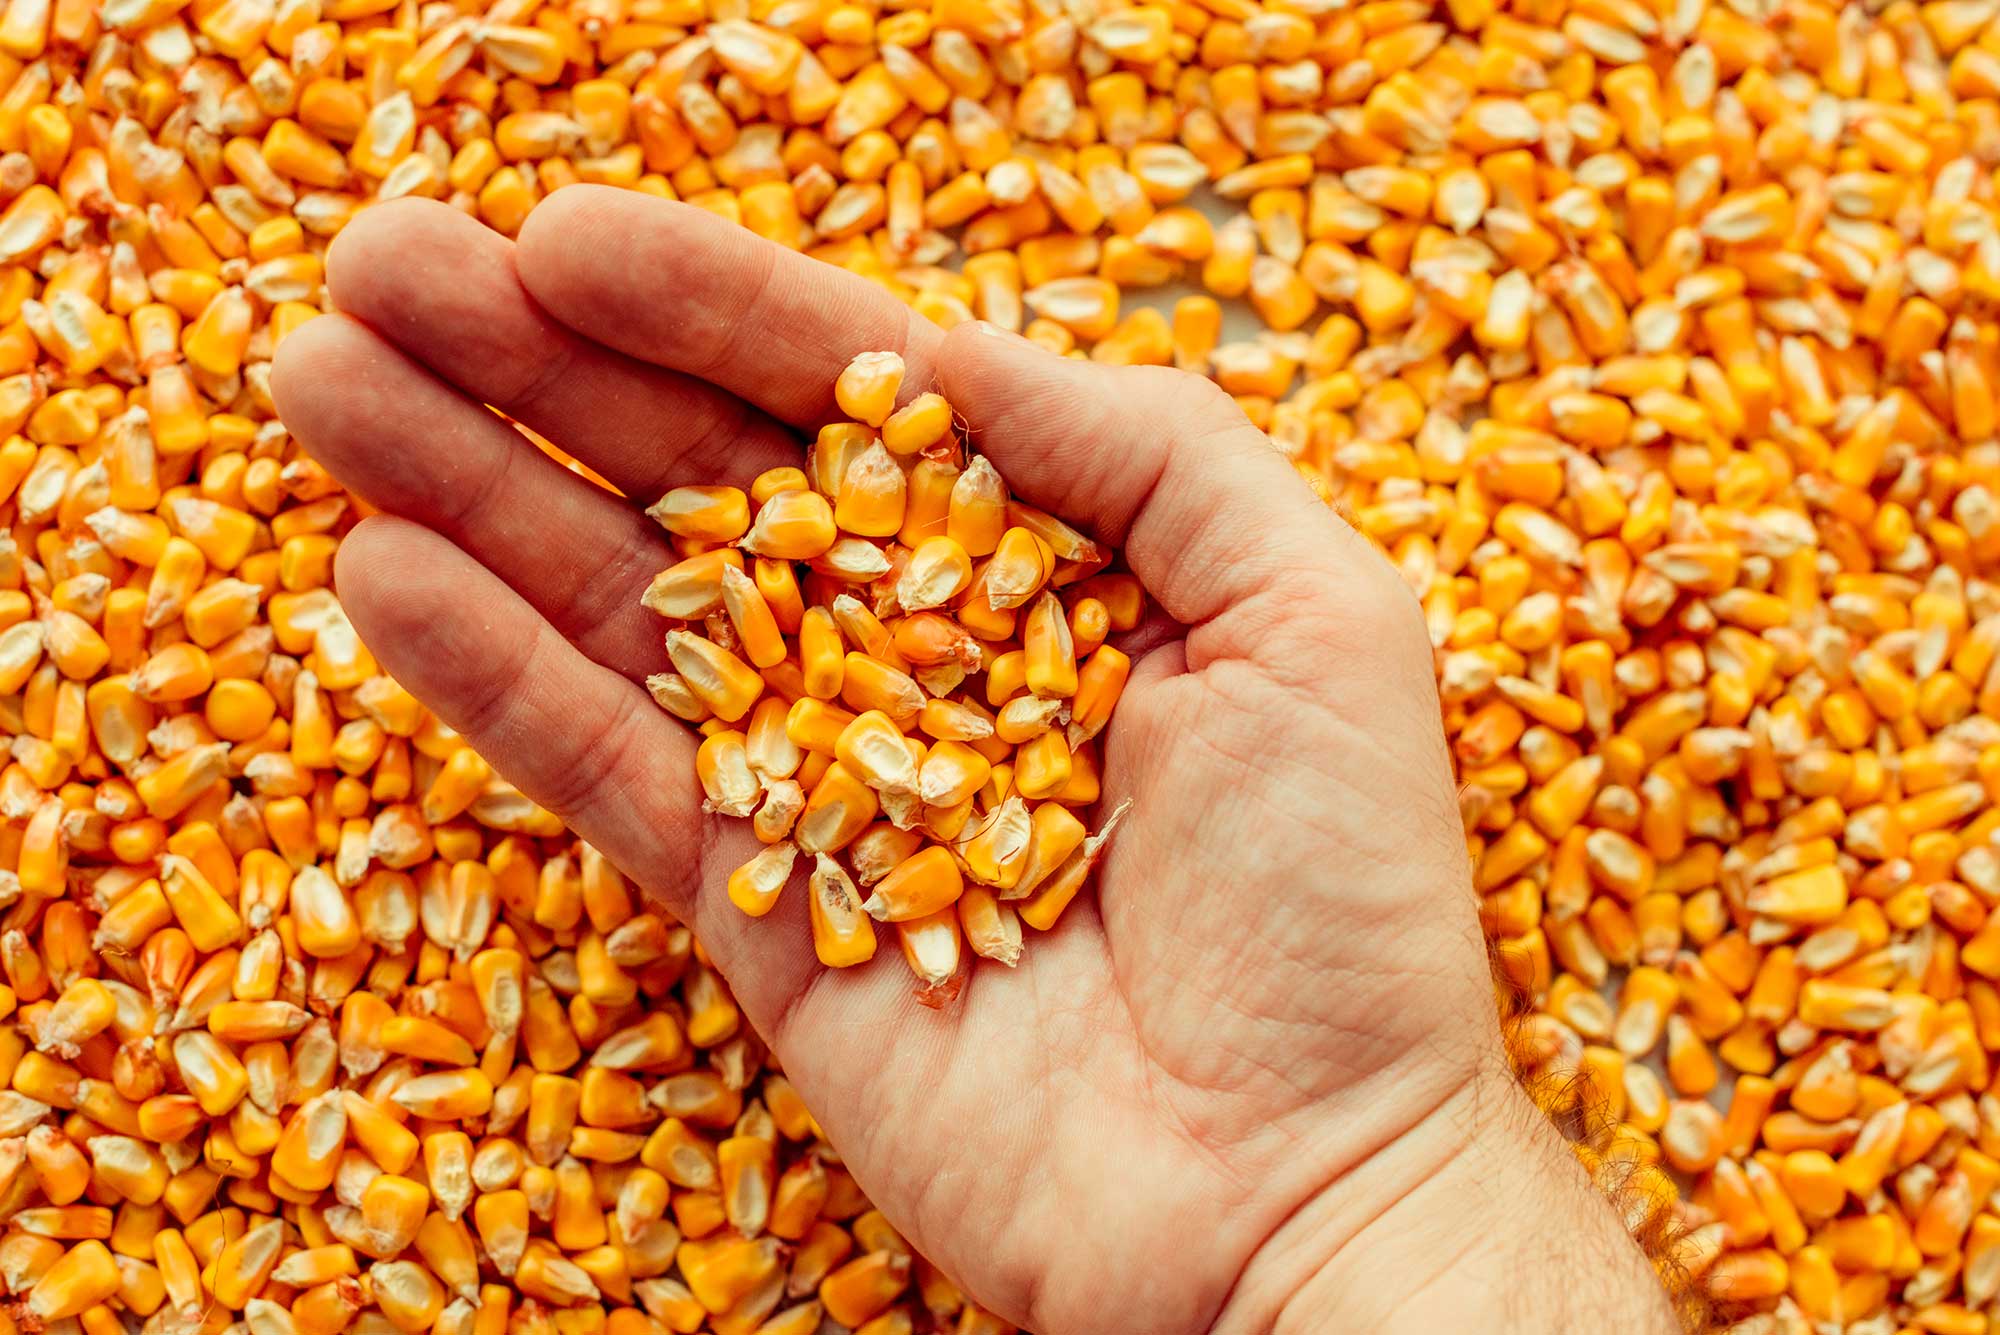 Урожай 2022 г.: рапс, пшеница, соя, подсолнечник, кукуруза, картофель. Комбикорм - в наличии и под заказ